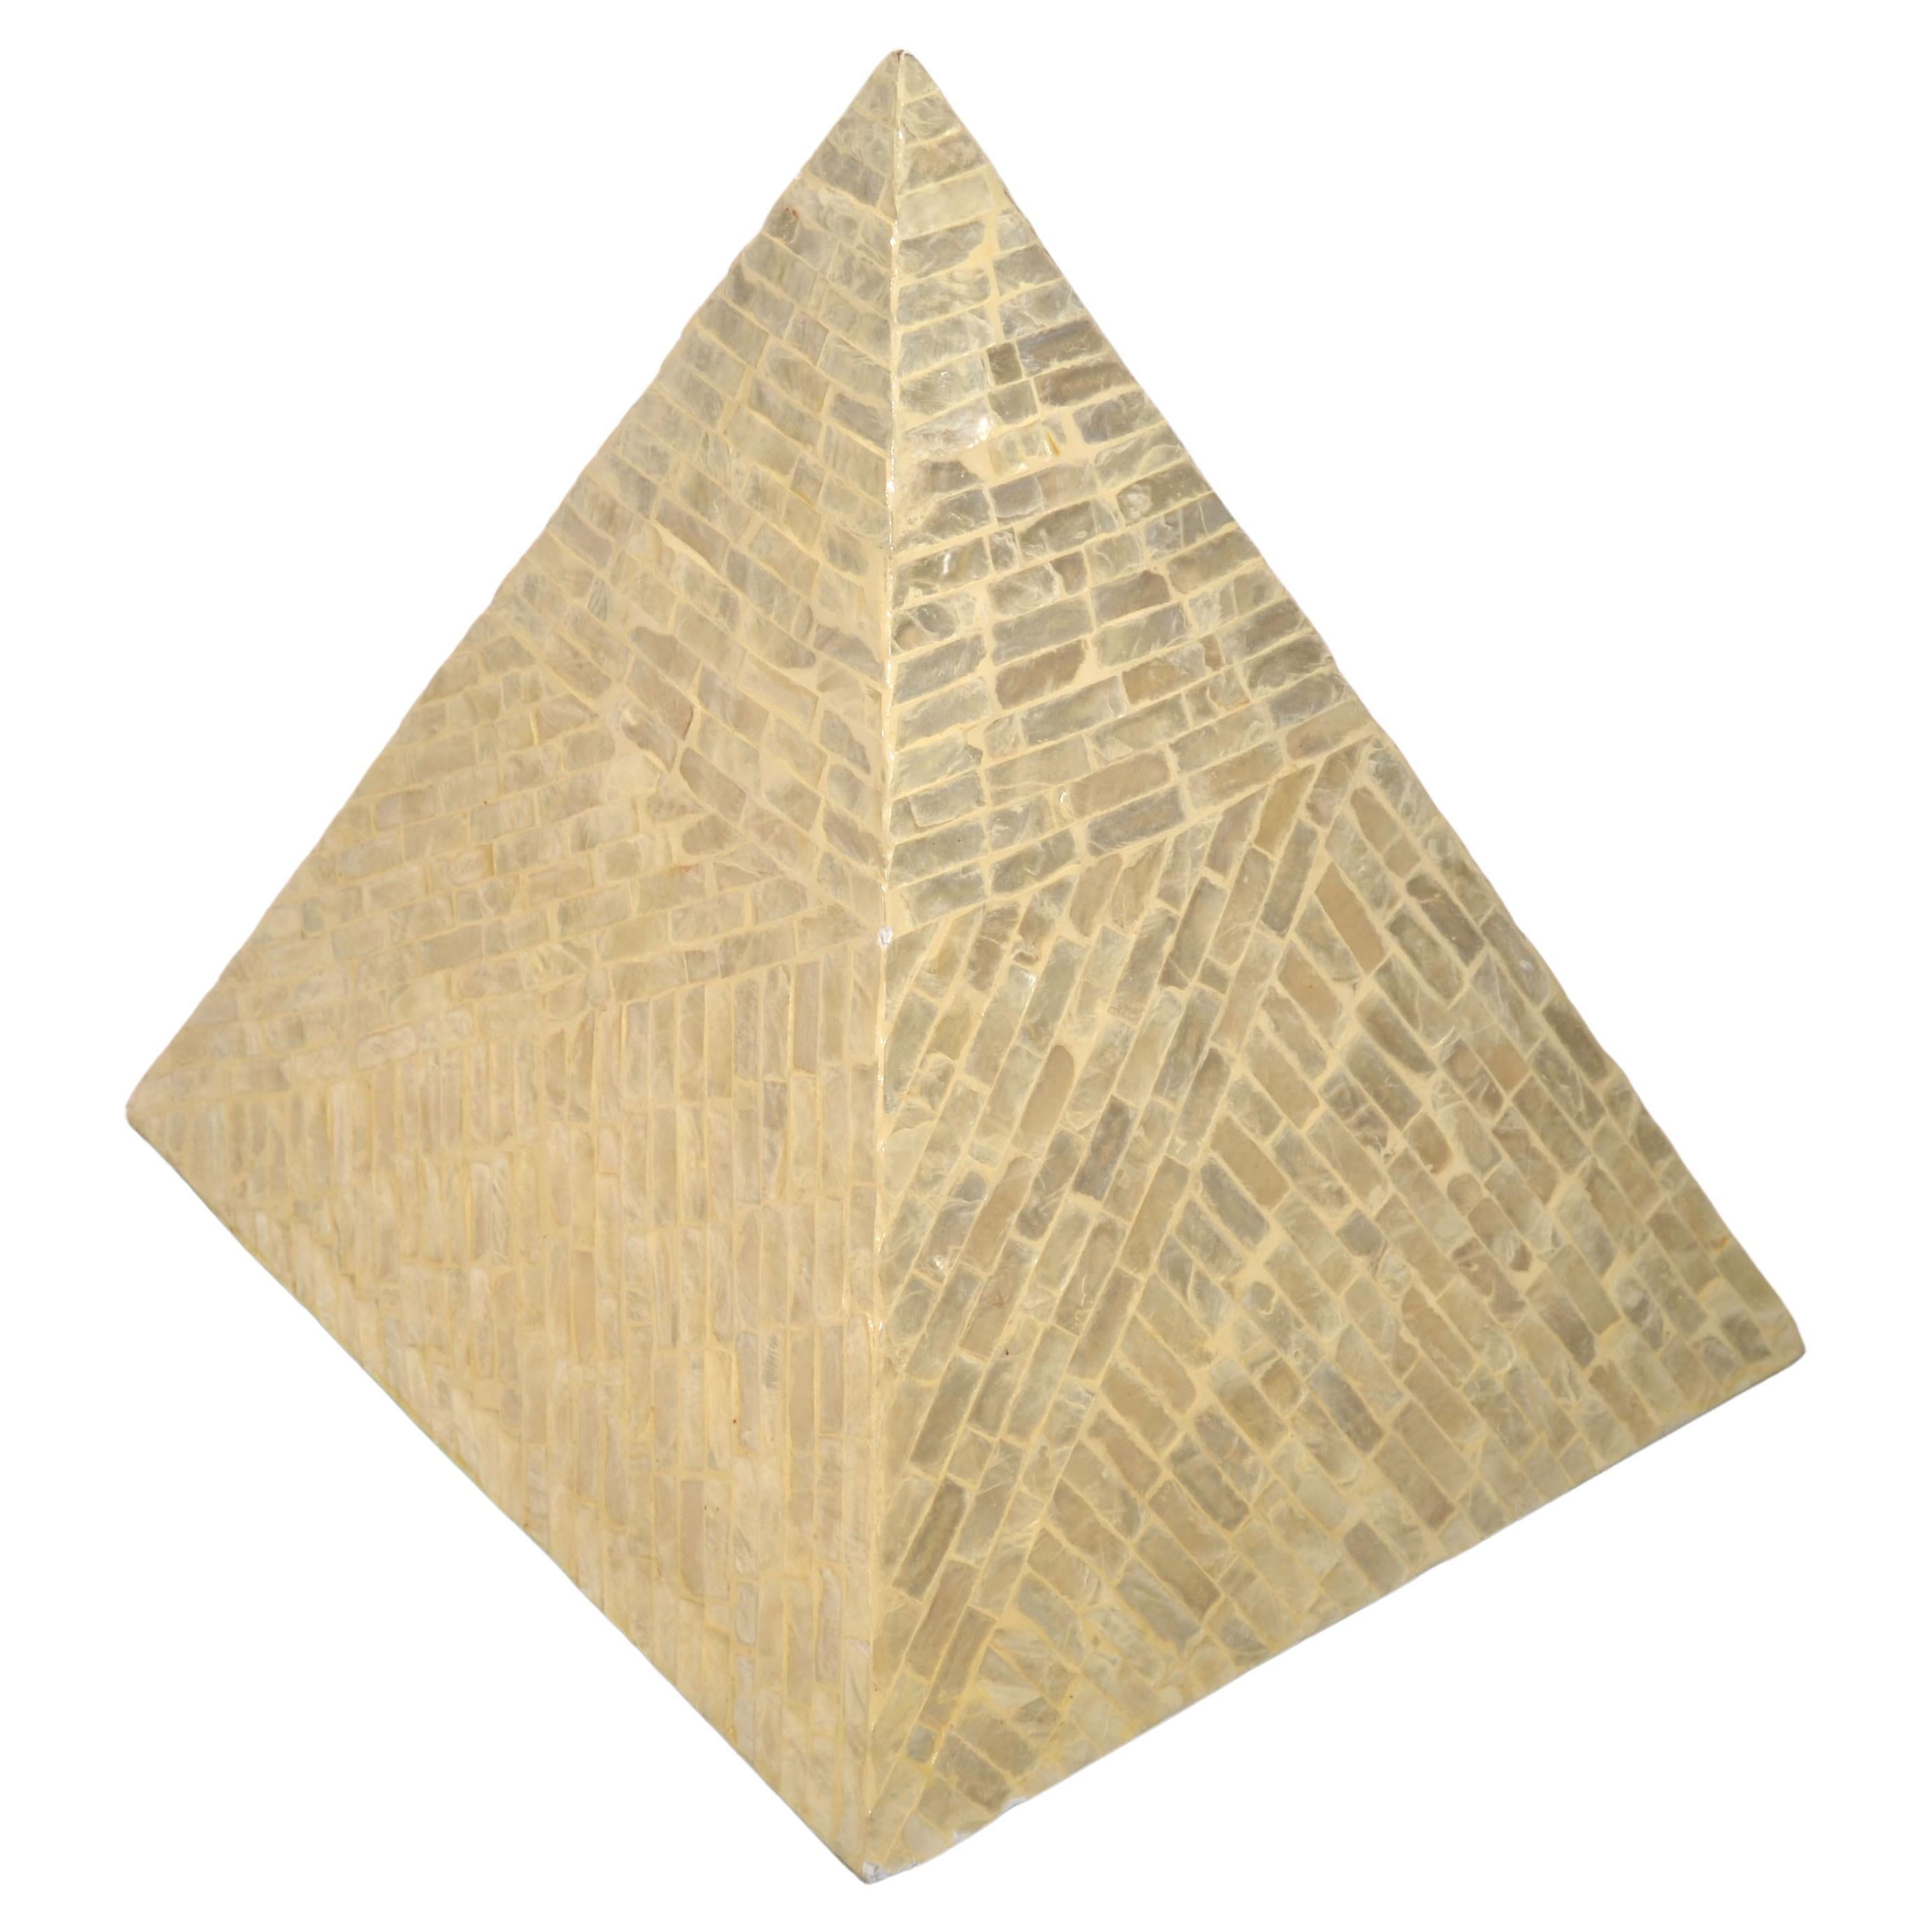 Arts And Crafts Periode Italienisch Pyramide aus Stücken poliert Perlmutt Muscheln über Holz Skulptur gemacht.
Reflektiert das Licht in einem warmen und eleganten Schimmer.
Wunderschön und mit muttersprachlicher Handwerkskunst gefertigt. 
In gutem